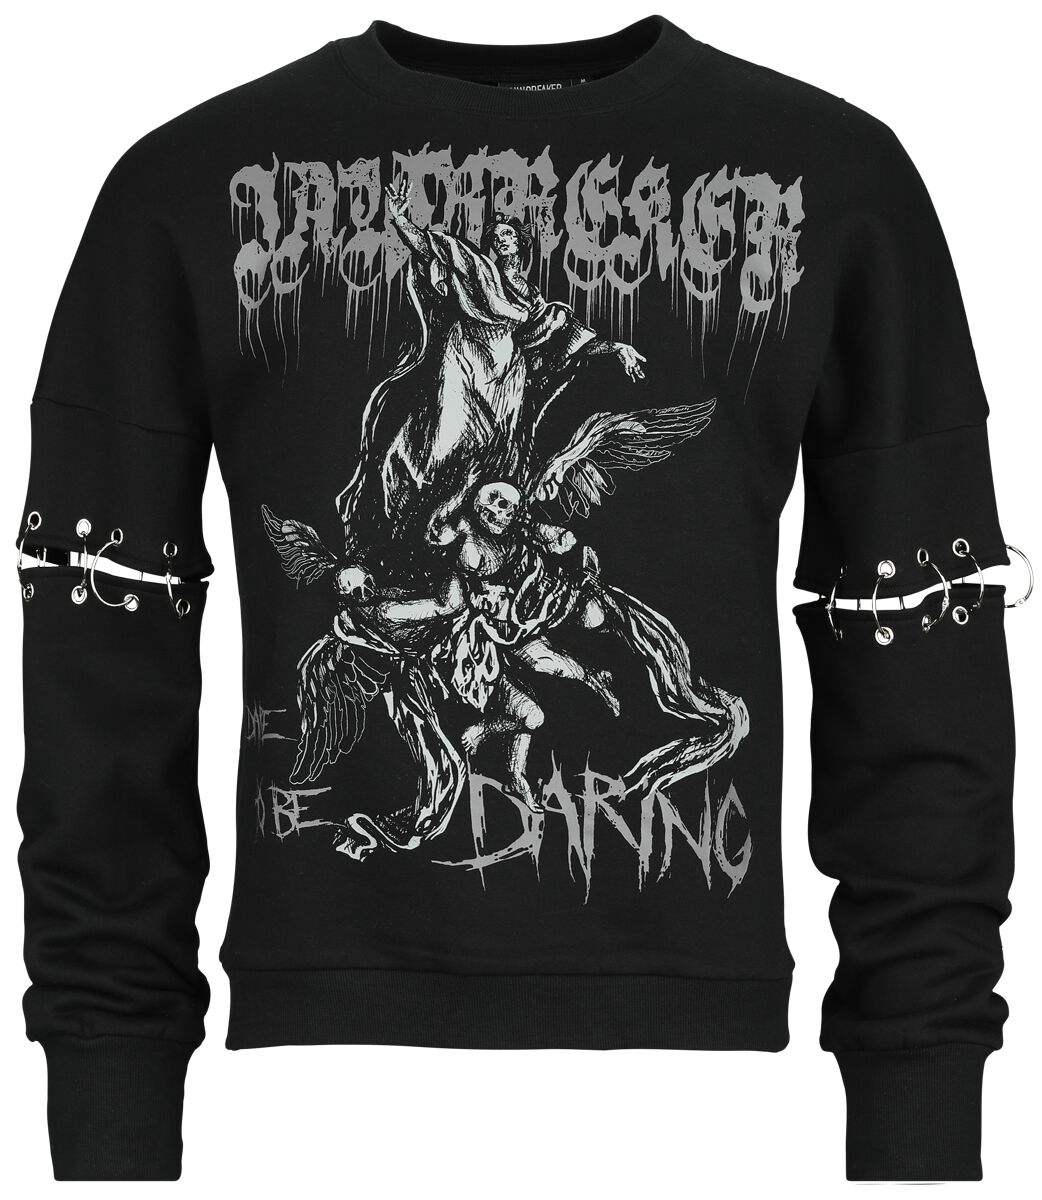 Jawbreaker - Gothic Sweatshirt - Dare To Be Daring - S bis XXL - Größe XL - schwarz